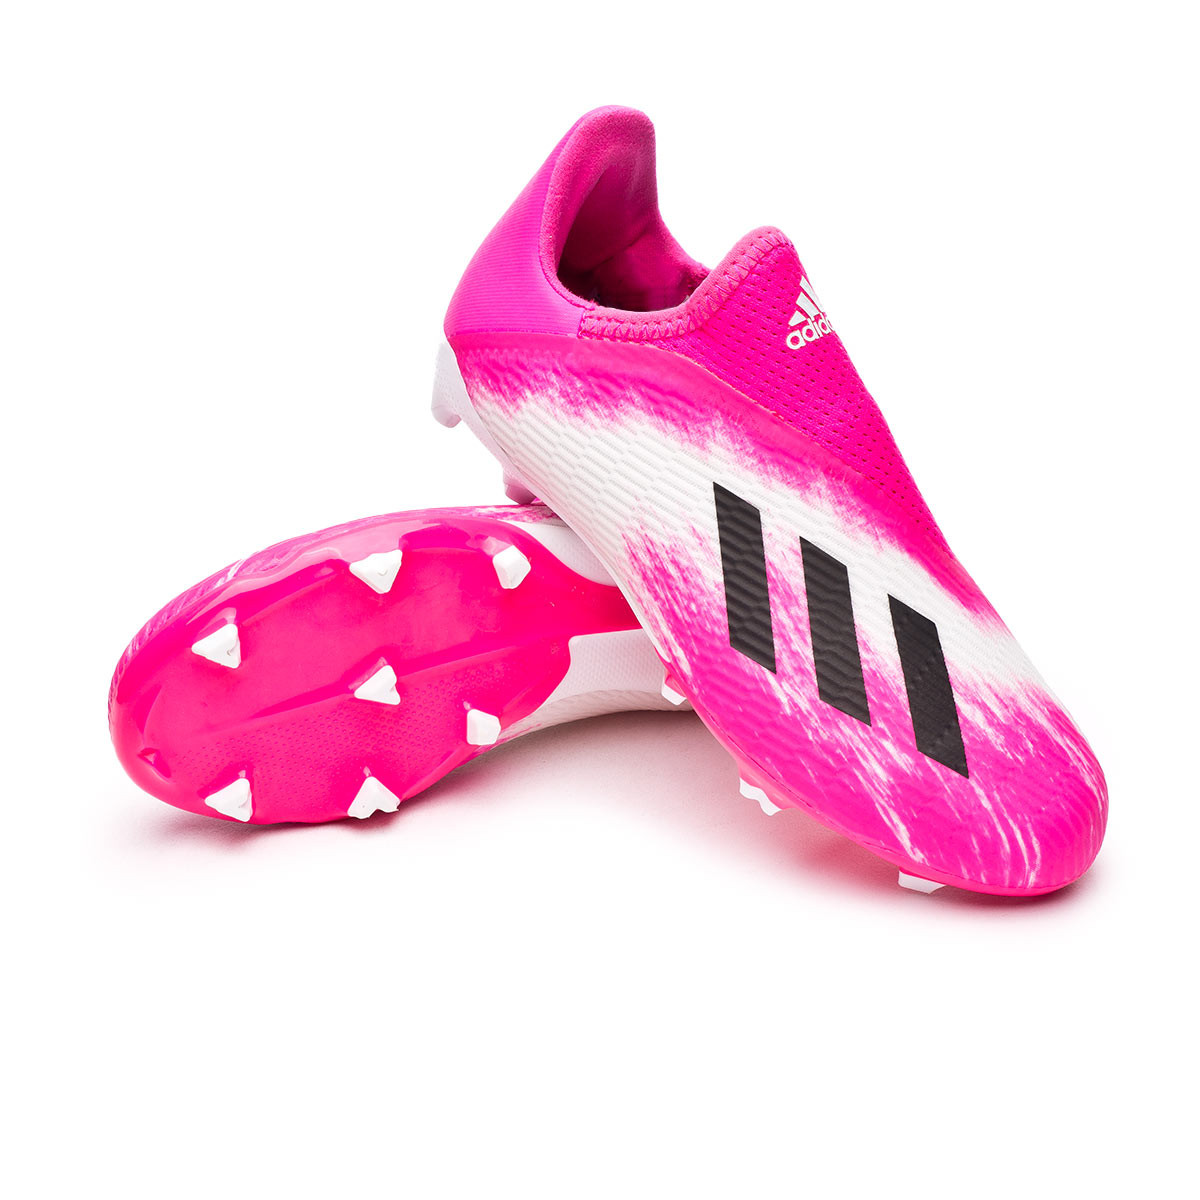 kids pink football boots